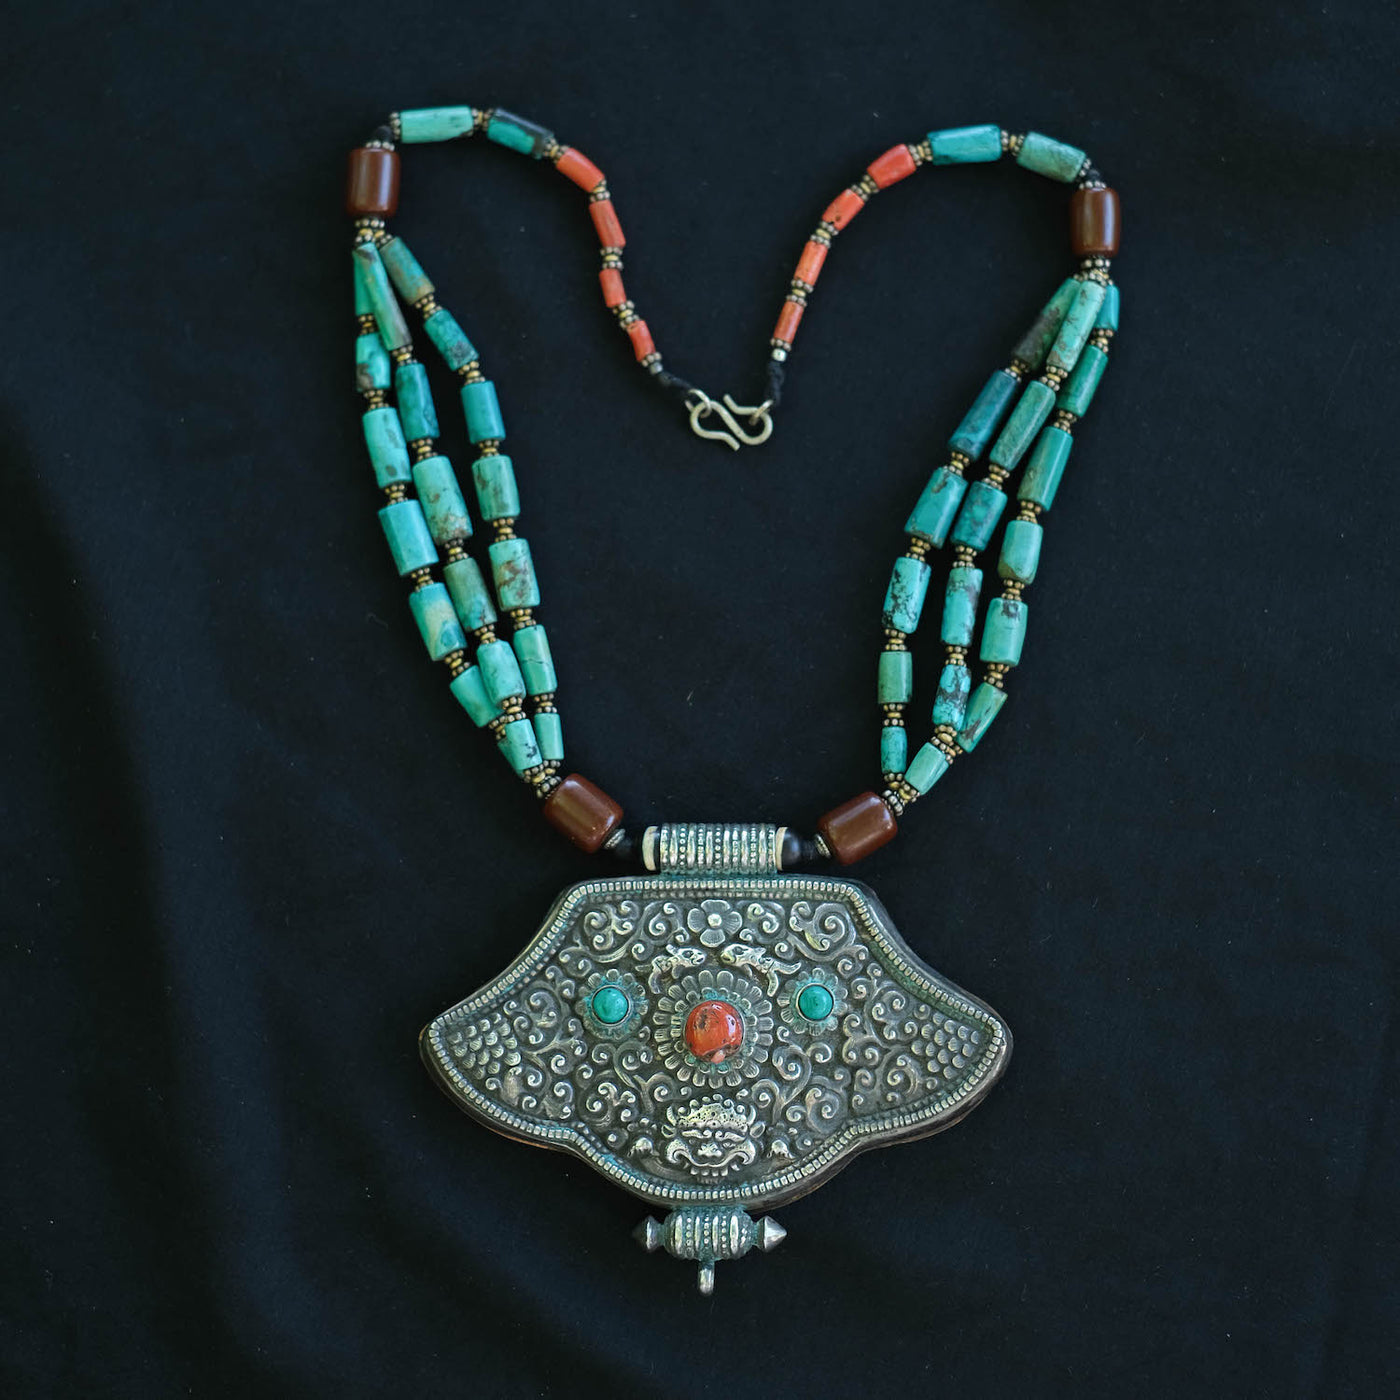 Padmasambhav - Kuber Silver Ghau Pendant with Tibetan Shrine Prayer Box -  Handmade in Nepal - Himalaya Handicrafts